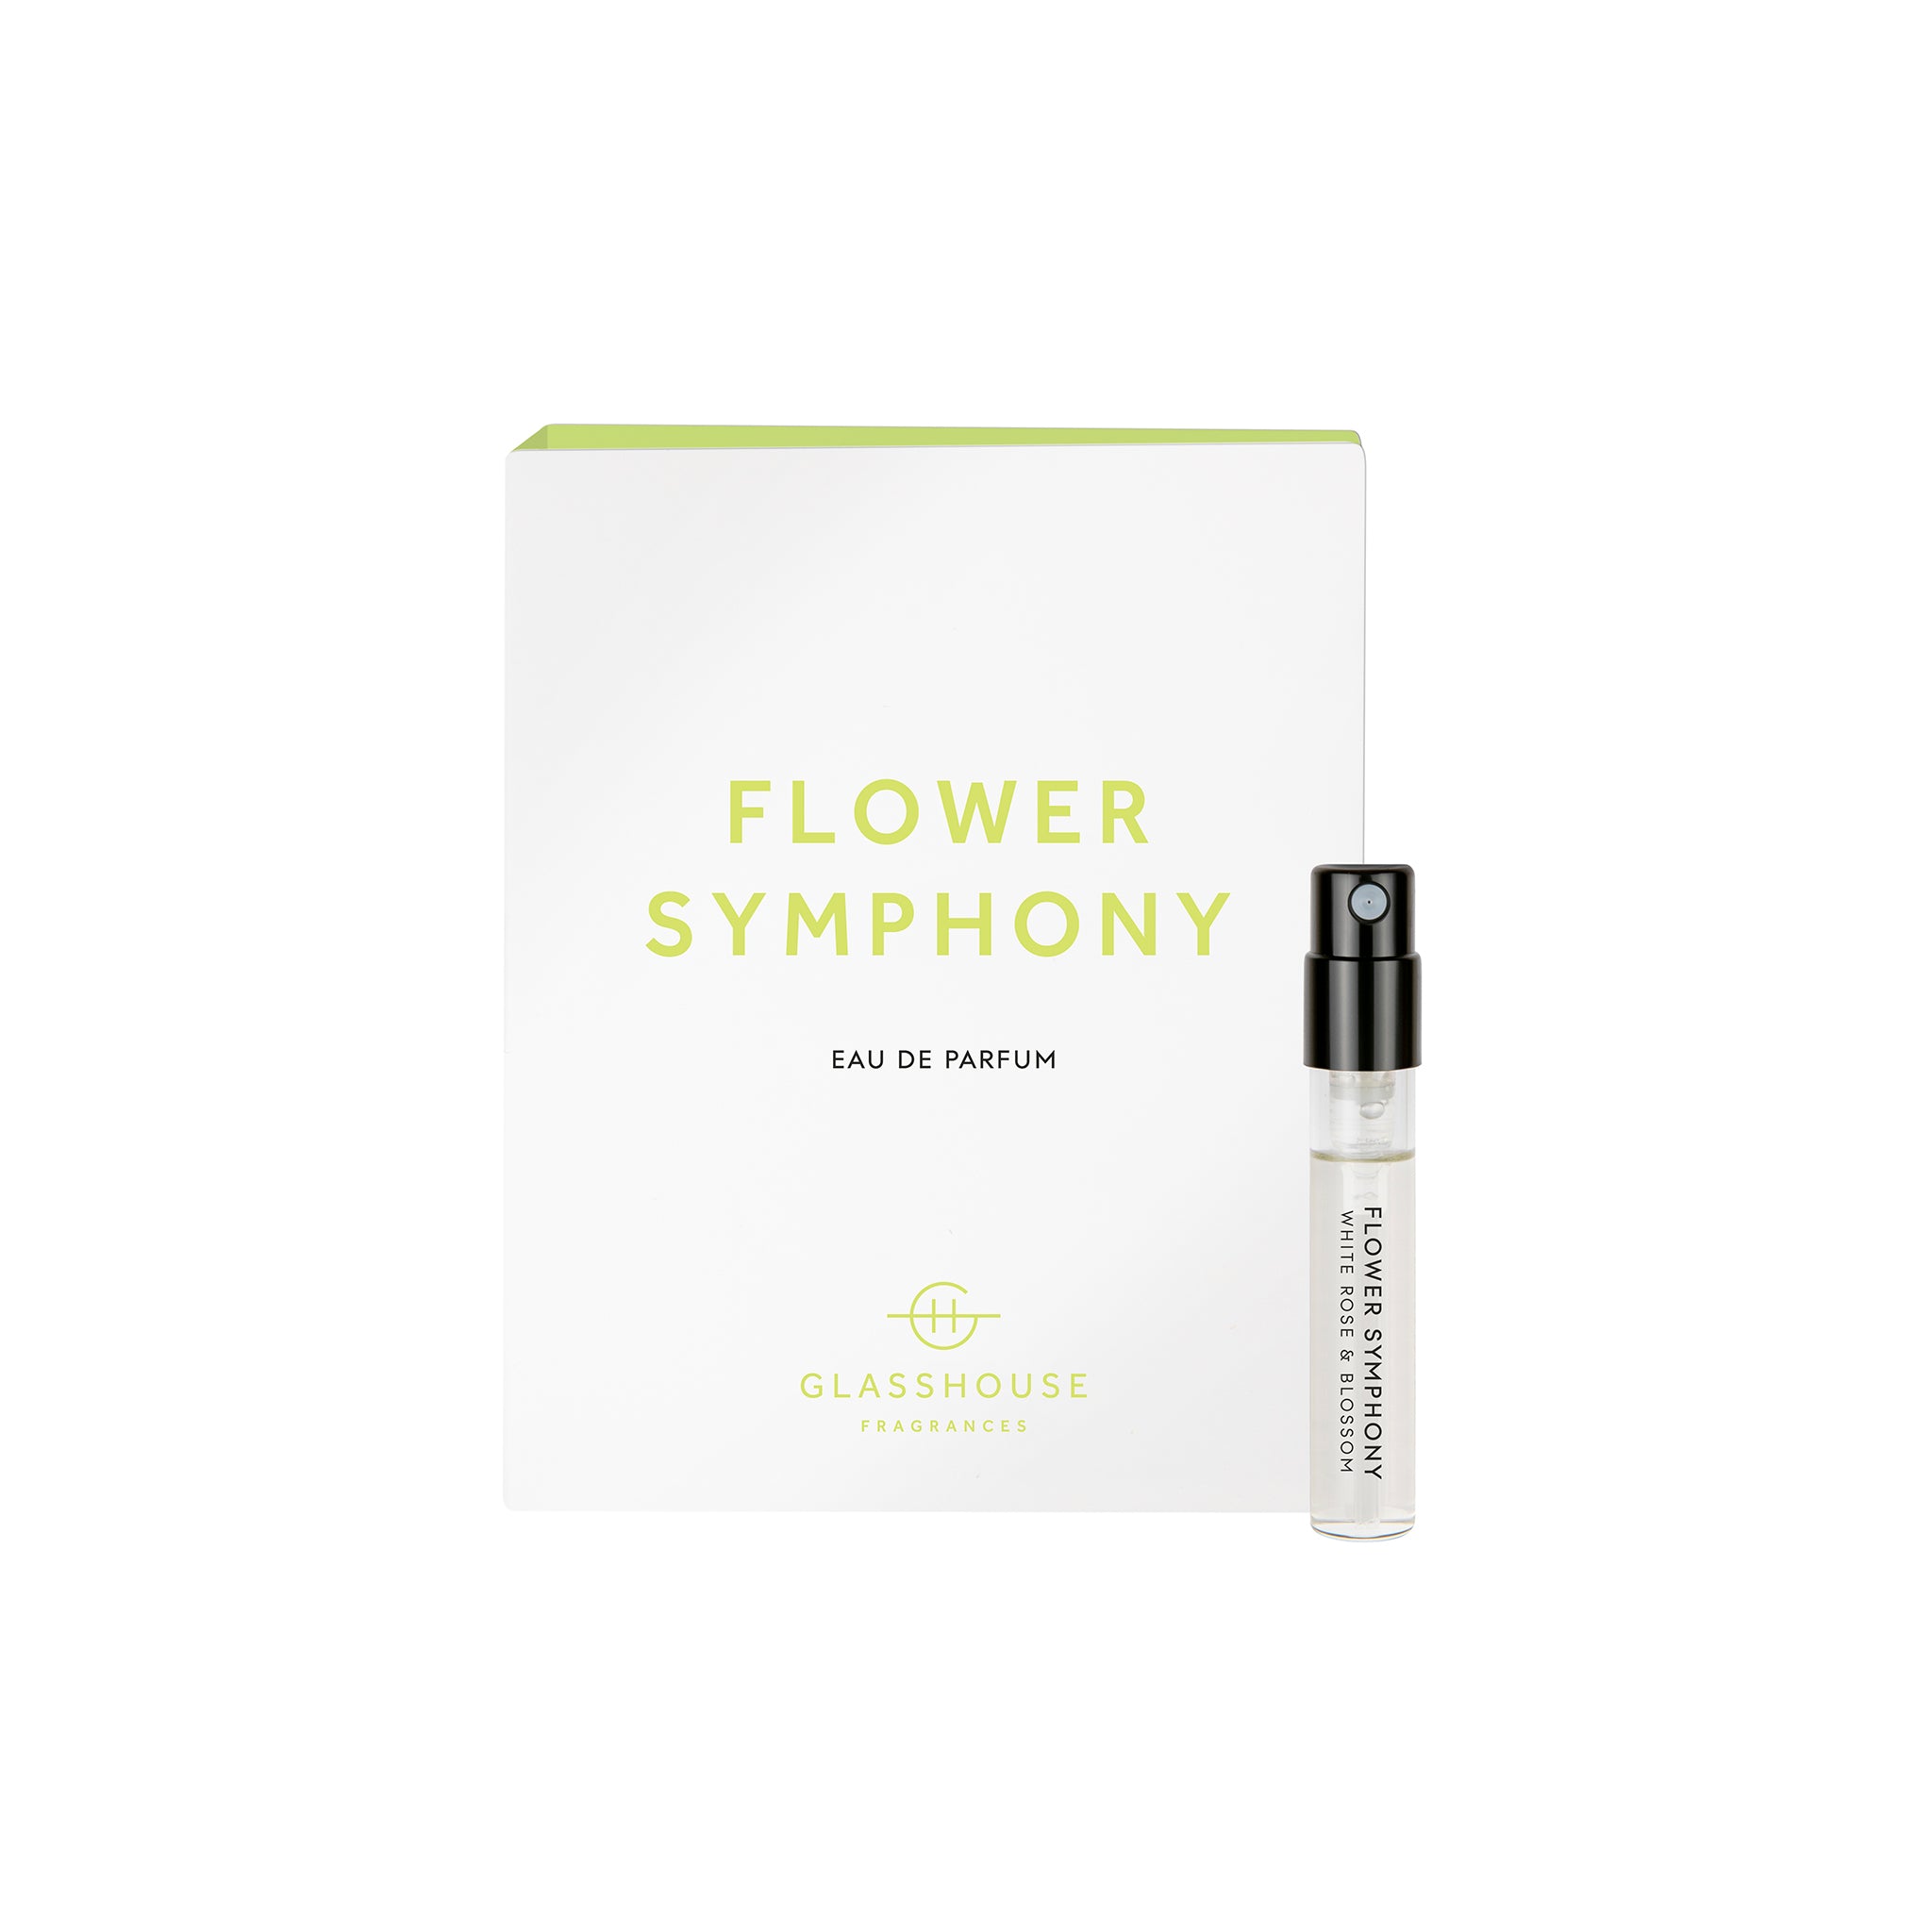 Glasshouse Fragrances Flower Symphony White Rose and Pear Blossom 1.8g Sample Eau de Parfum spray and box